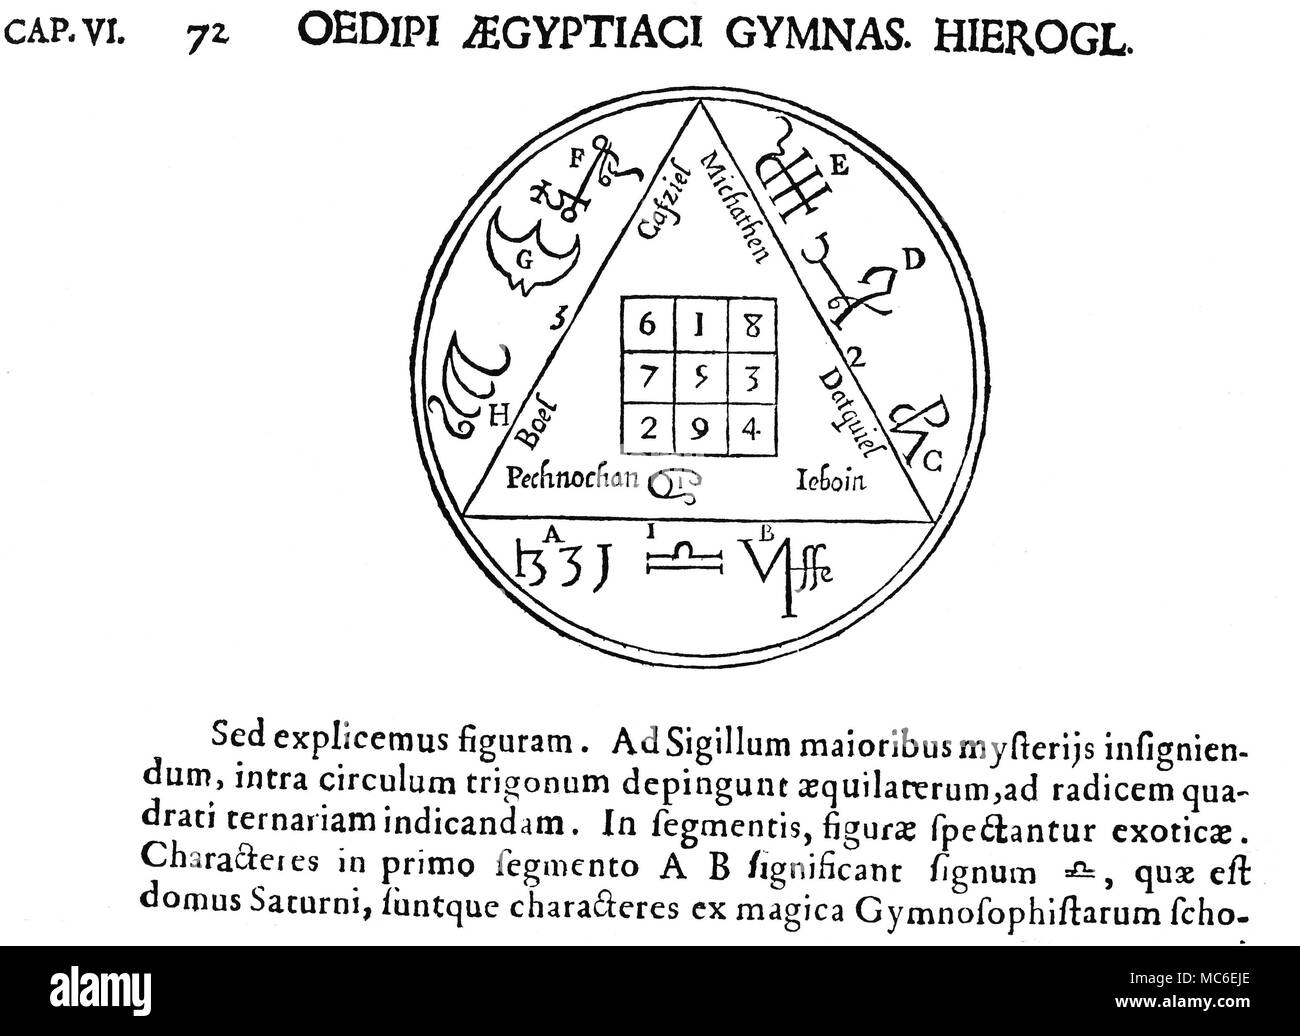 Magische Symbole - magische Quadrate - Saturn die Tabula Saturni, oder magische Quadrat von Saturn, auf einem 3x3-Quadrat, die einzelne lineare Addition von, 15, in eine beliebige Richtung. Der Platz wird von verschiedenen Namen und Siegel von Engeln und Dämonen zu Saturn verwandte umgeben. Von Athanasius Kircher, Oedipus Aegyptiacus, 1652-4. Die Struktur und einige der Engel Lore, wird von den magischen Quadraten veröffentlicht von Cornelius Agrippa abgeleitet. Stockfoto